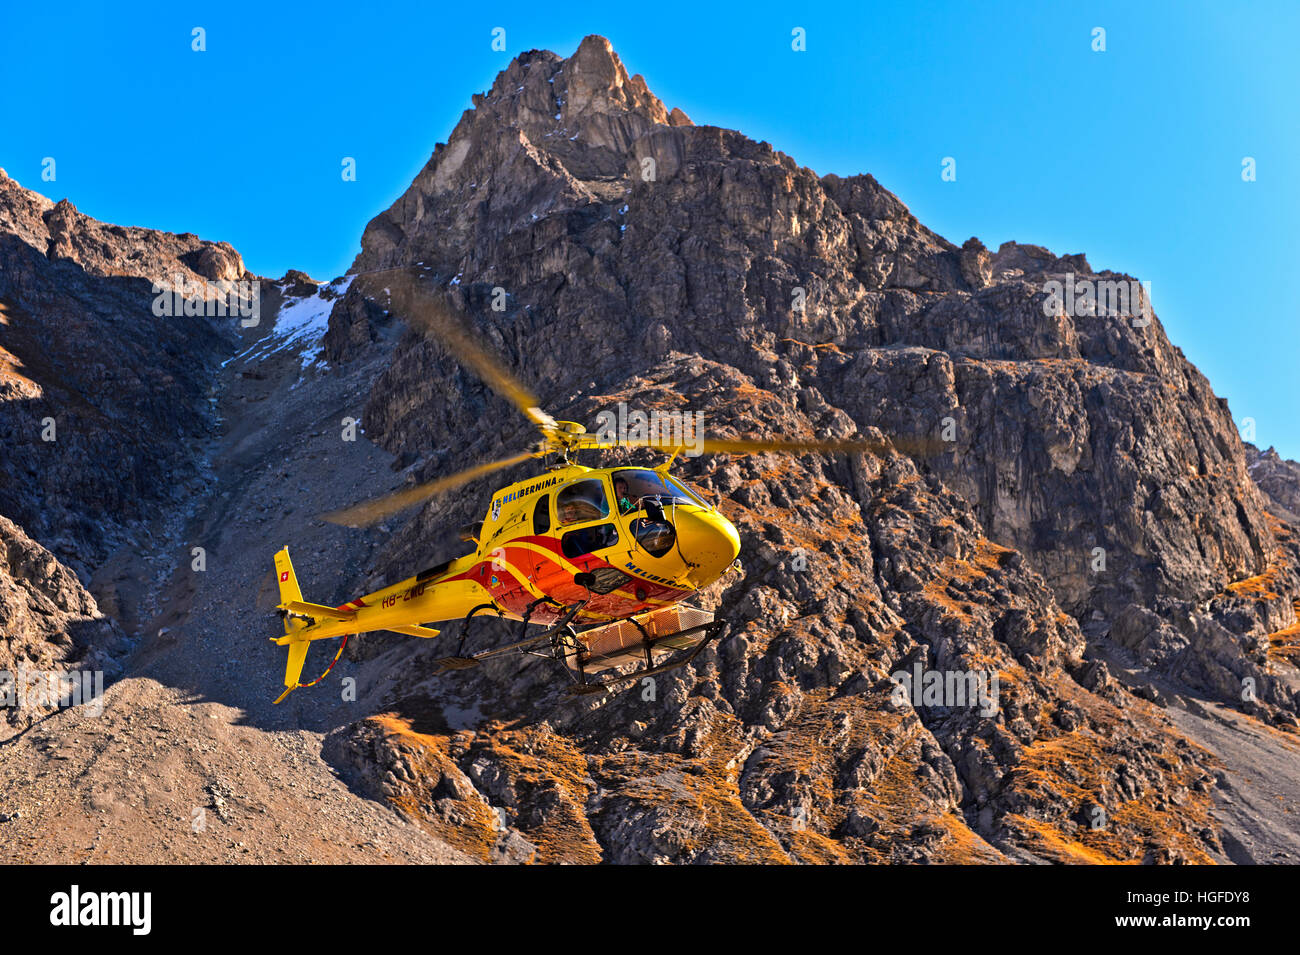 Hubschrauber Eurocopter AS350 Ecureuil der Heli Bernina AG im Val Lischana, Engadiner Alpen, Graubünden, Graubünden, Schweiz Stockfoto